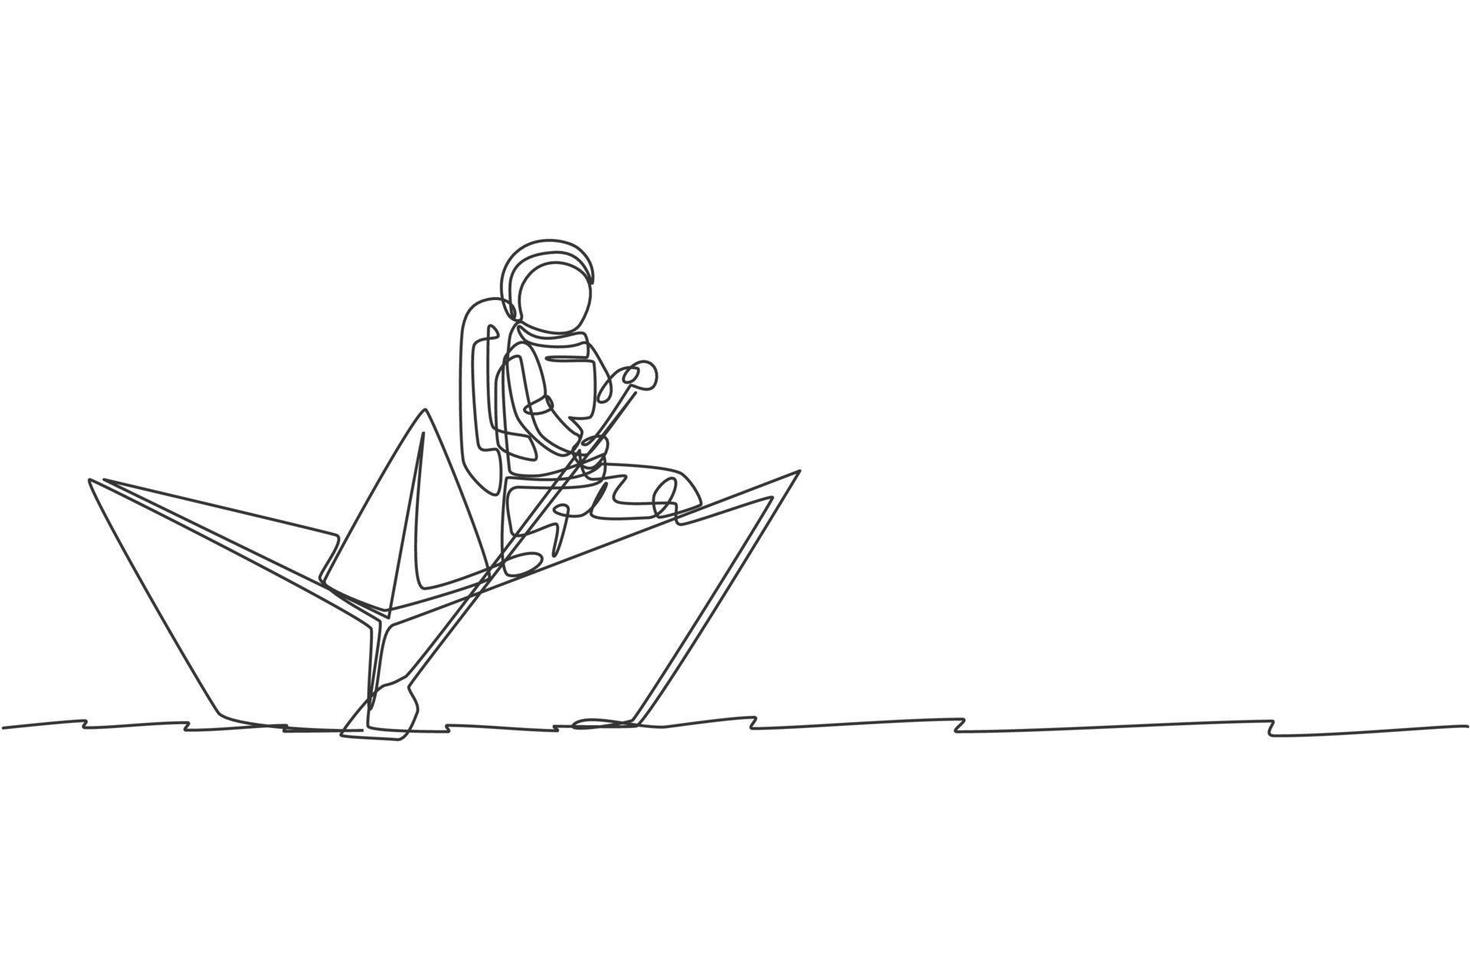 um desenho de linha contínua do barco de papel do jovem astronauta marinheiro a remo no oceano do mar. conceito de espaço de galáxia cósmica. ilustração em vetor gráfico de desenho de linha única dinâmica